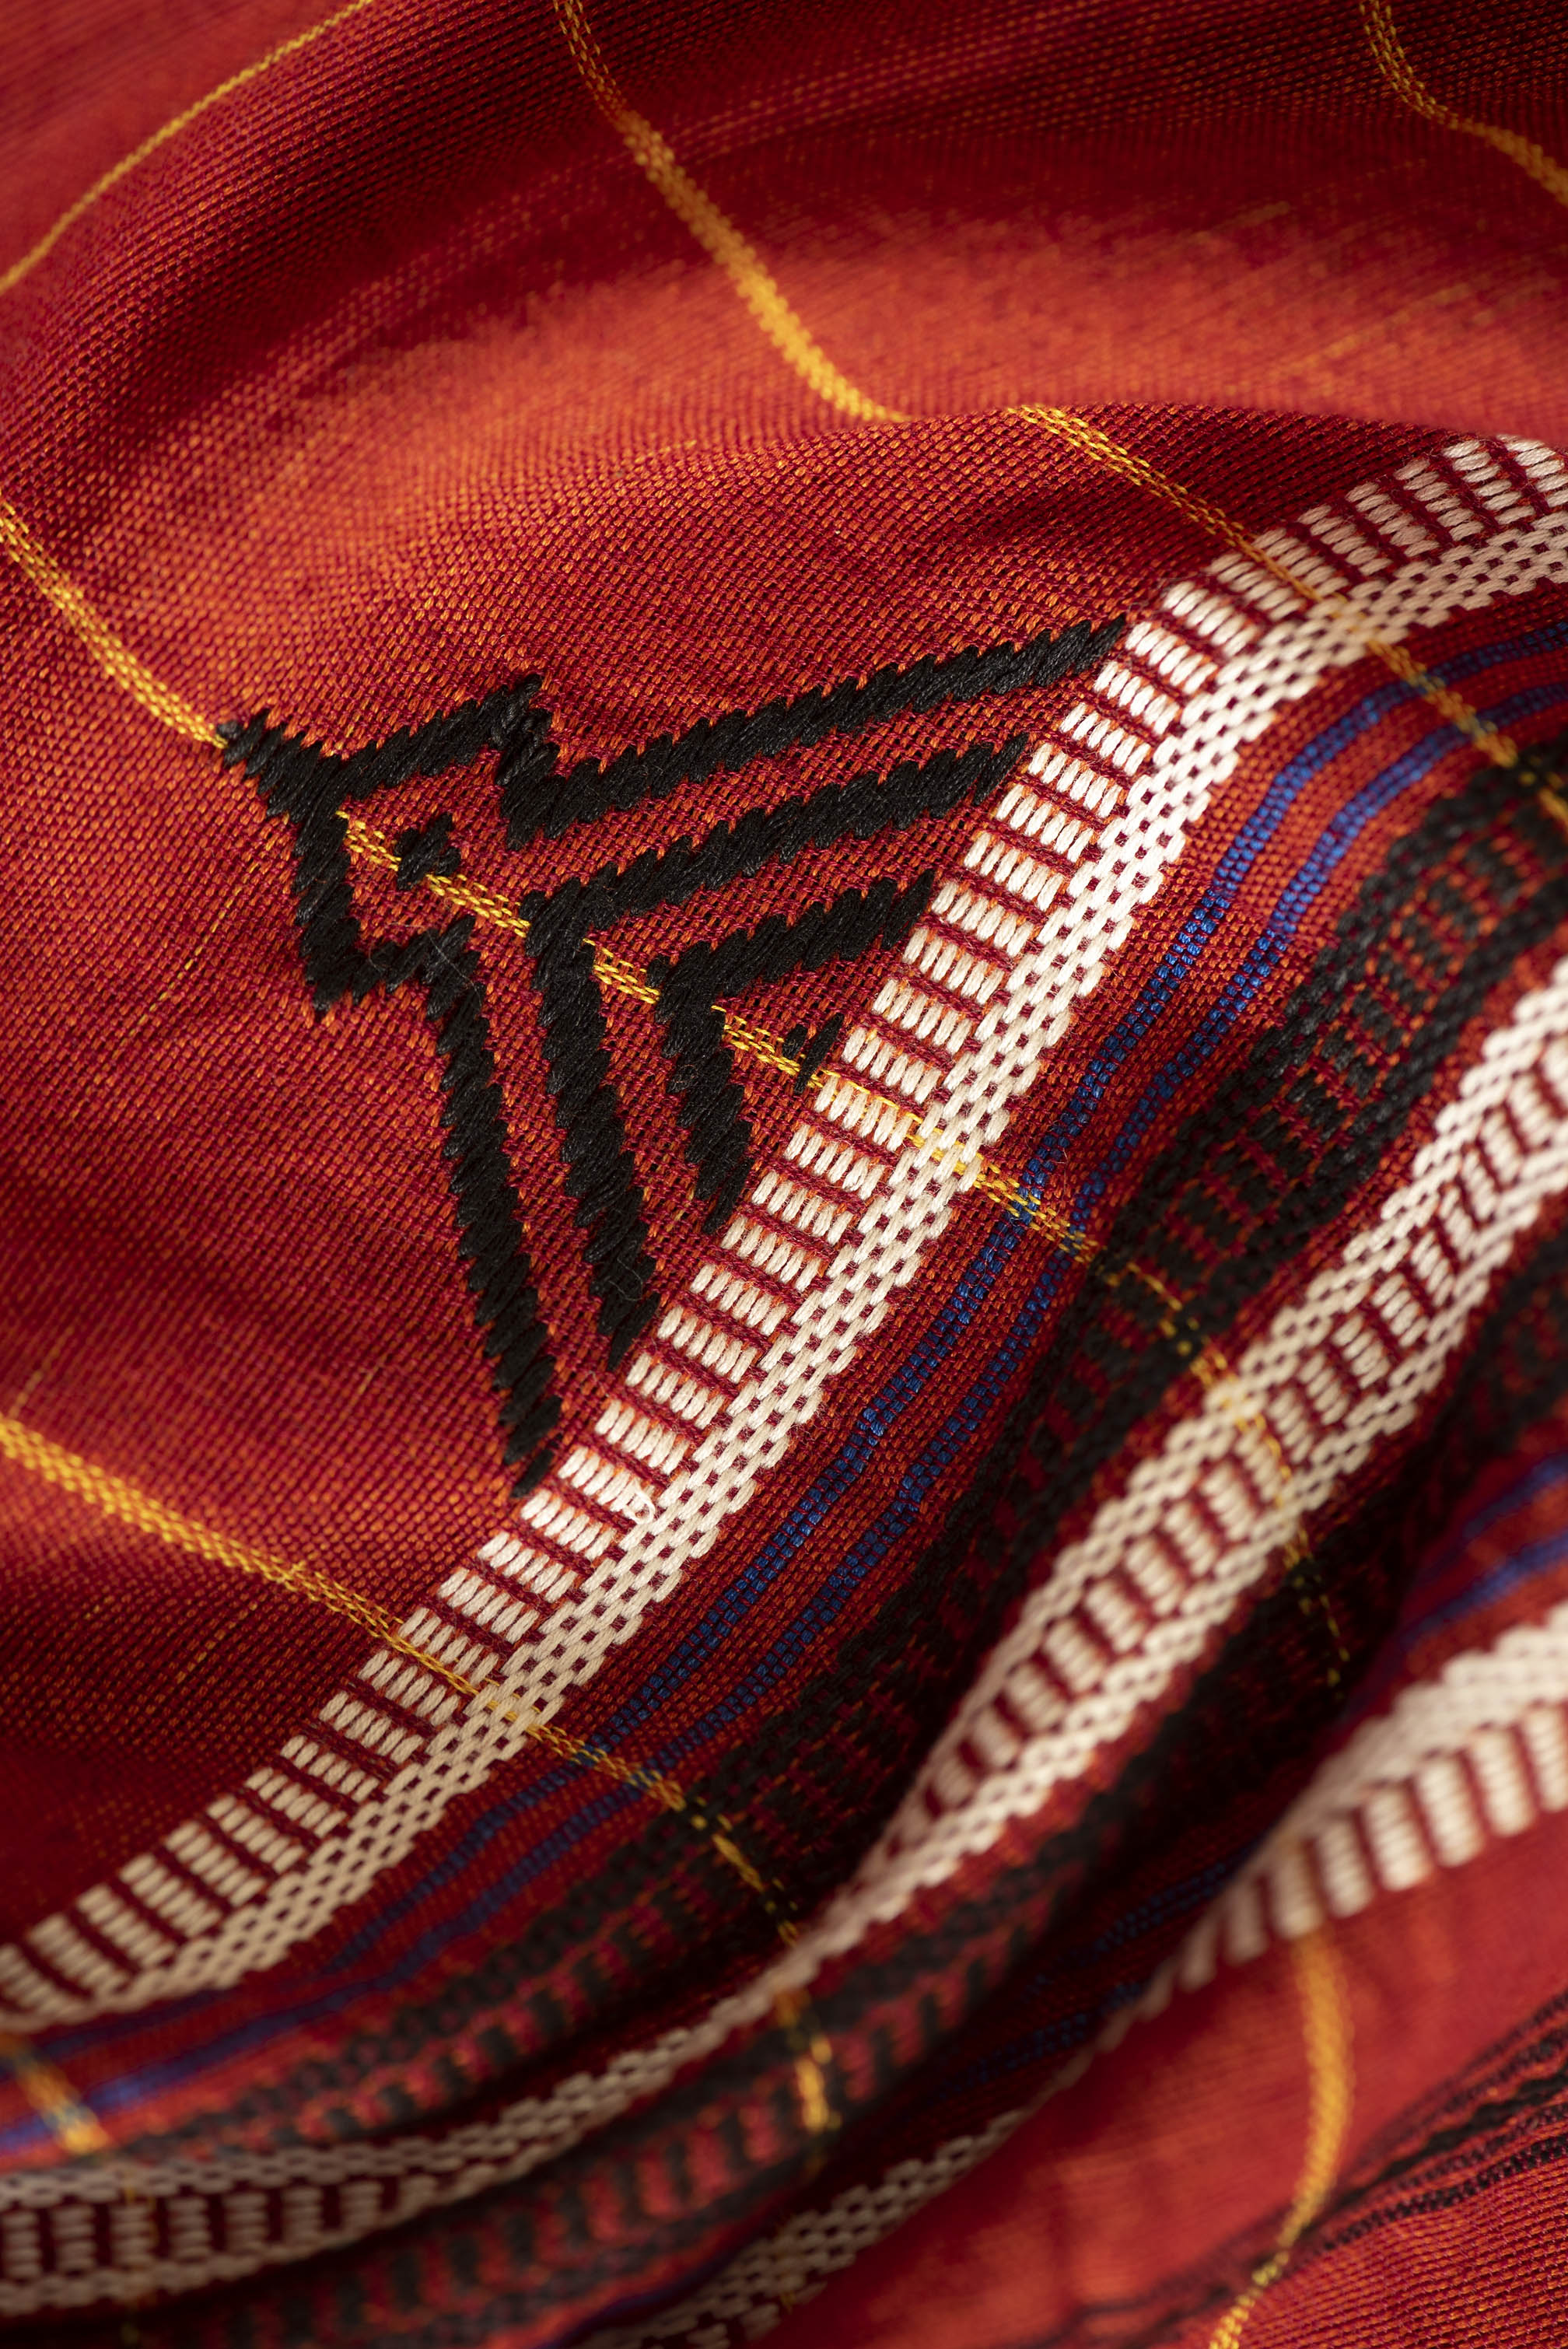 Kotpad handloom cotton saree | natural dyed | Madder red